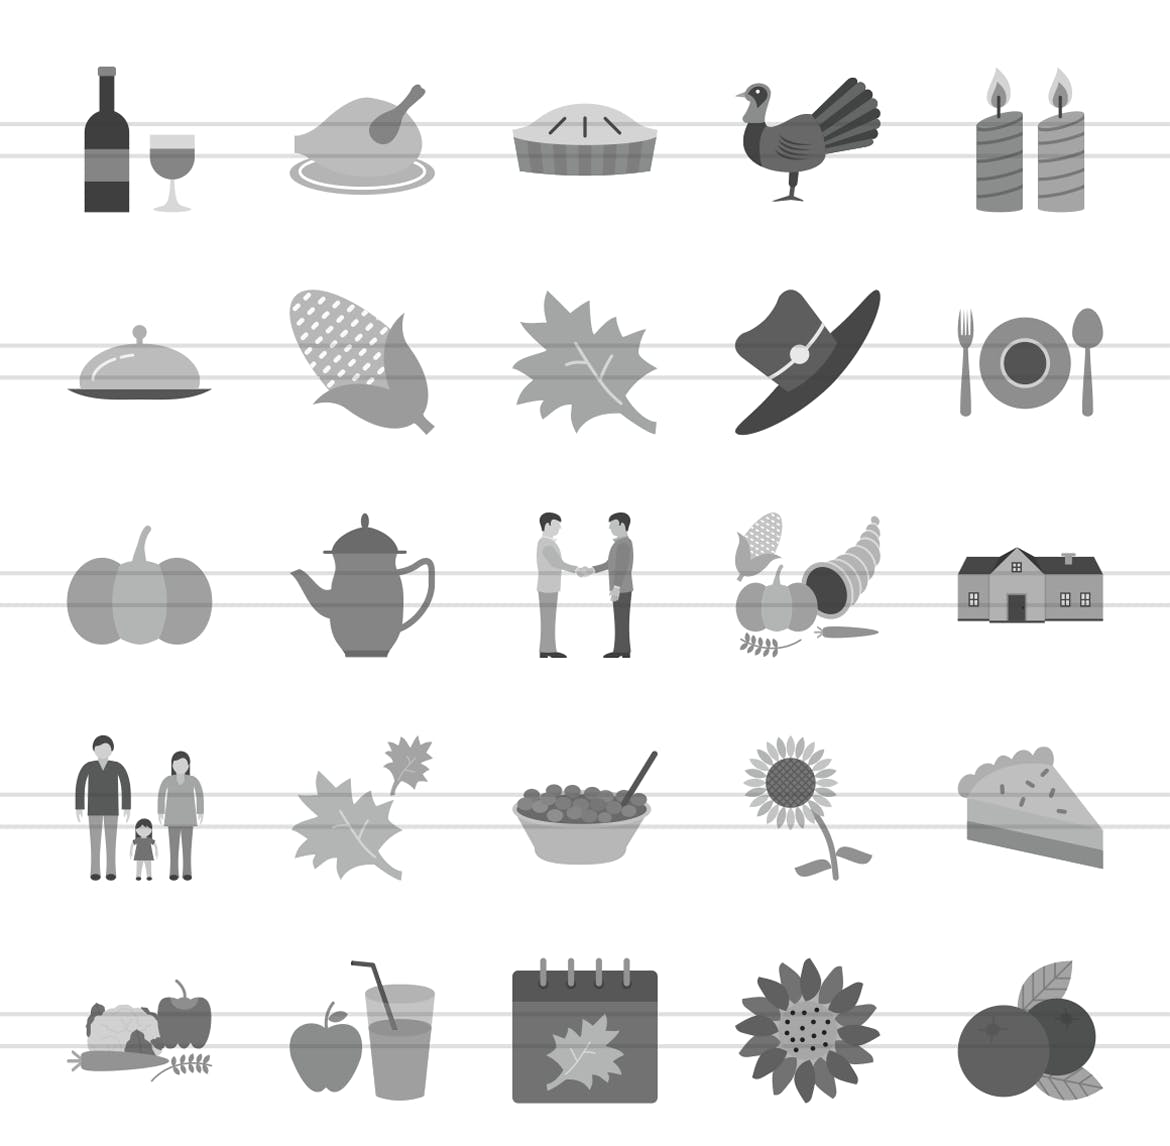 50个感恩节节日主题灰度图标设计素材 50 Thanksgiving Flat Greyscale Icons插图(1)